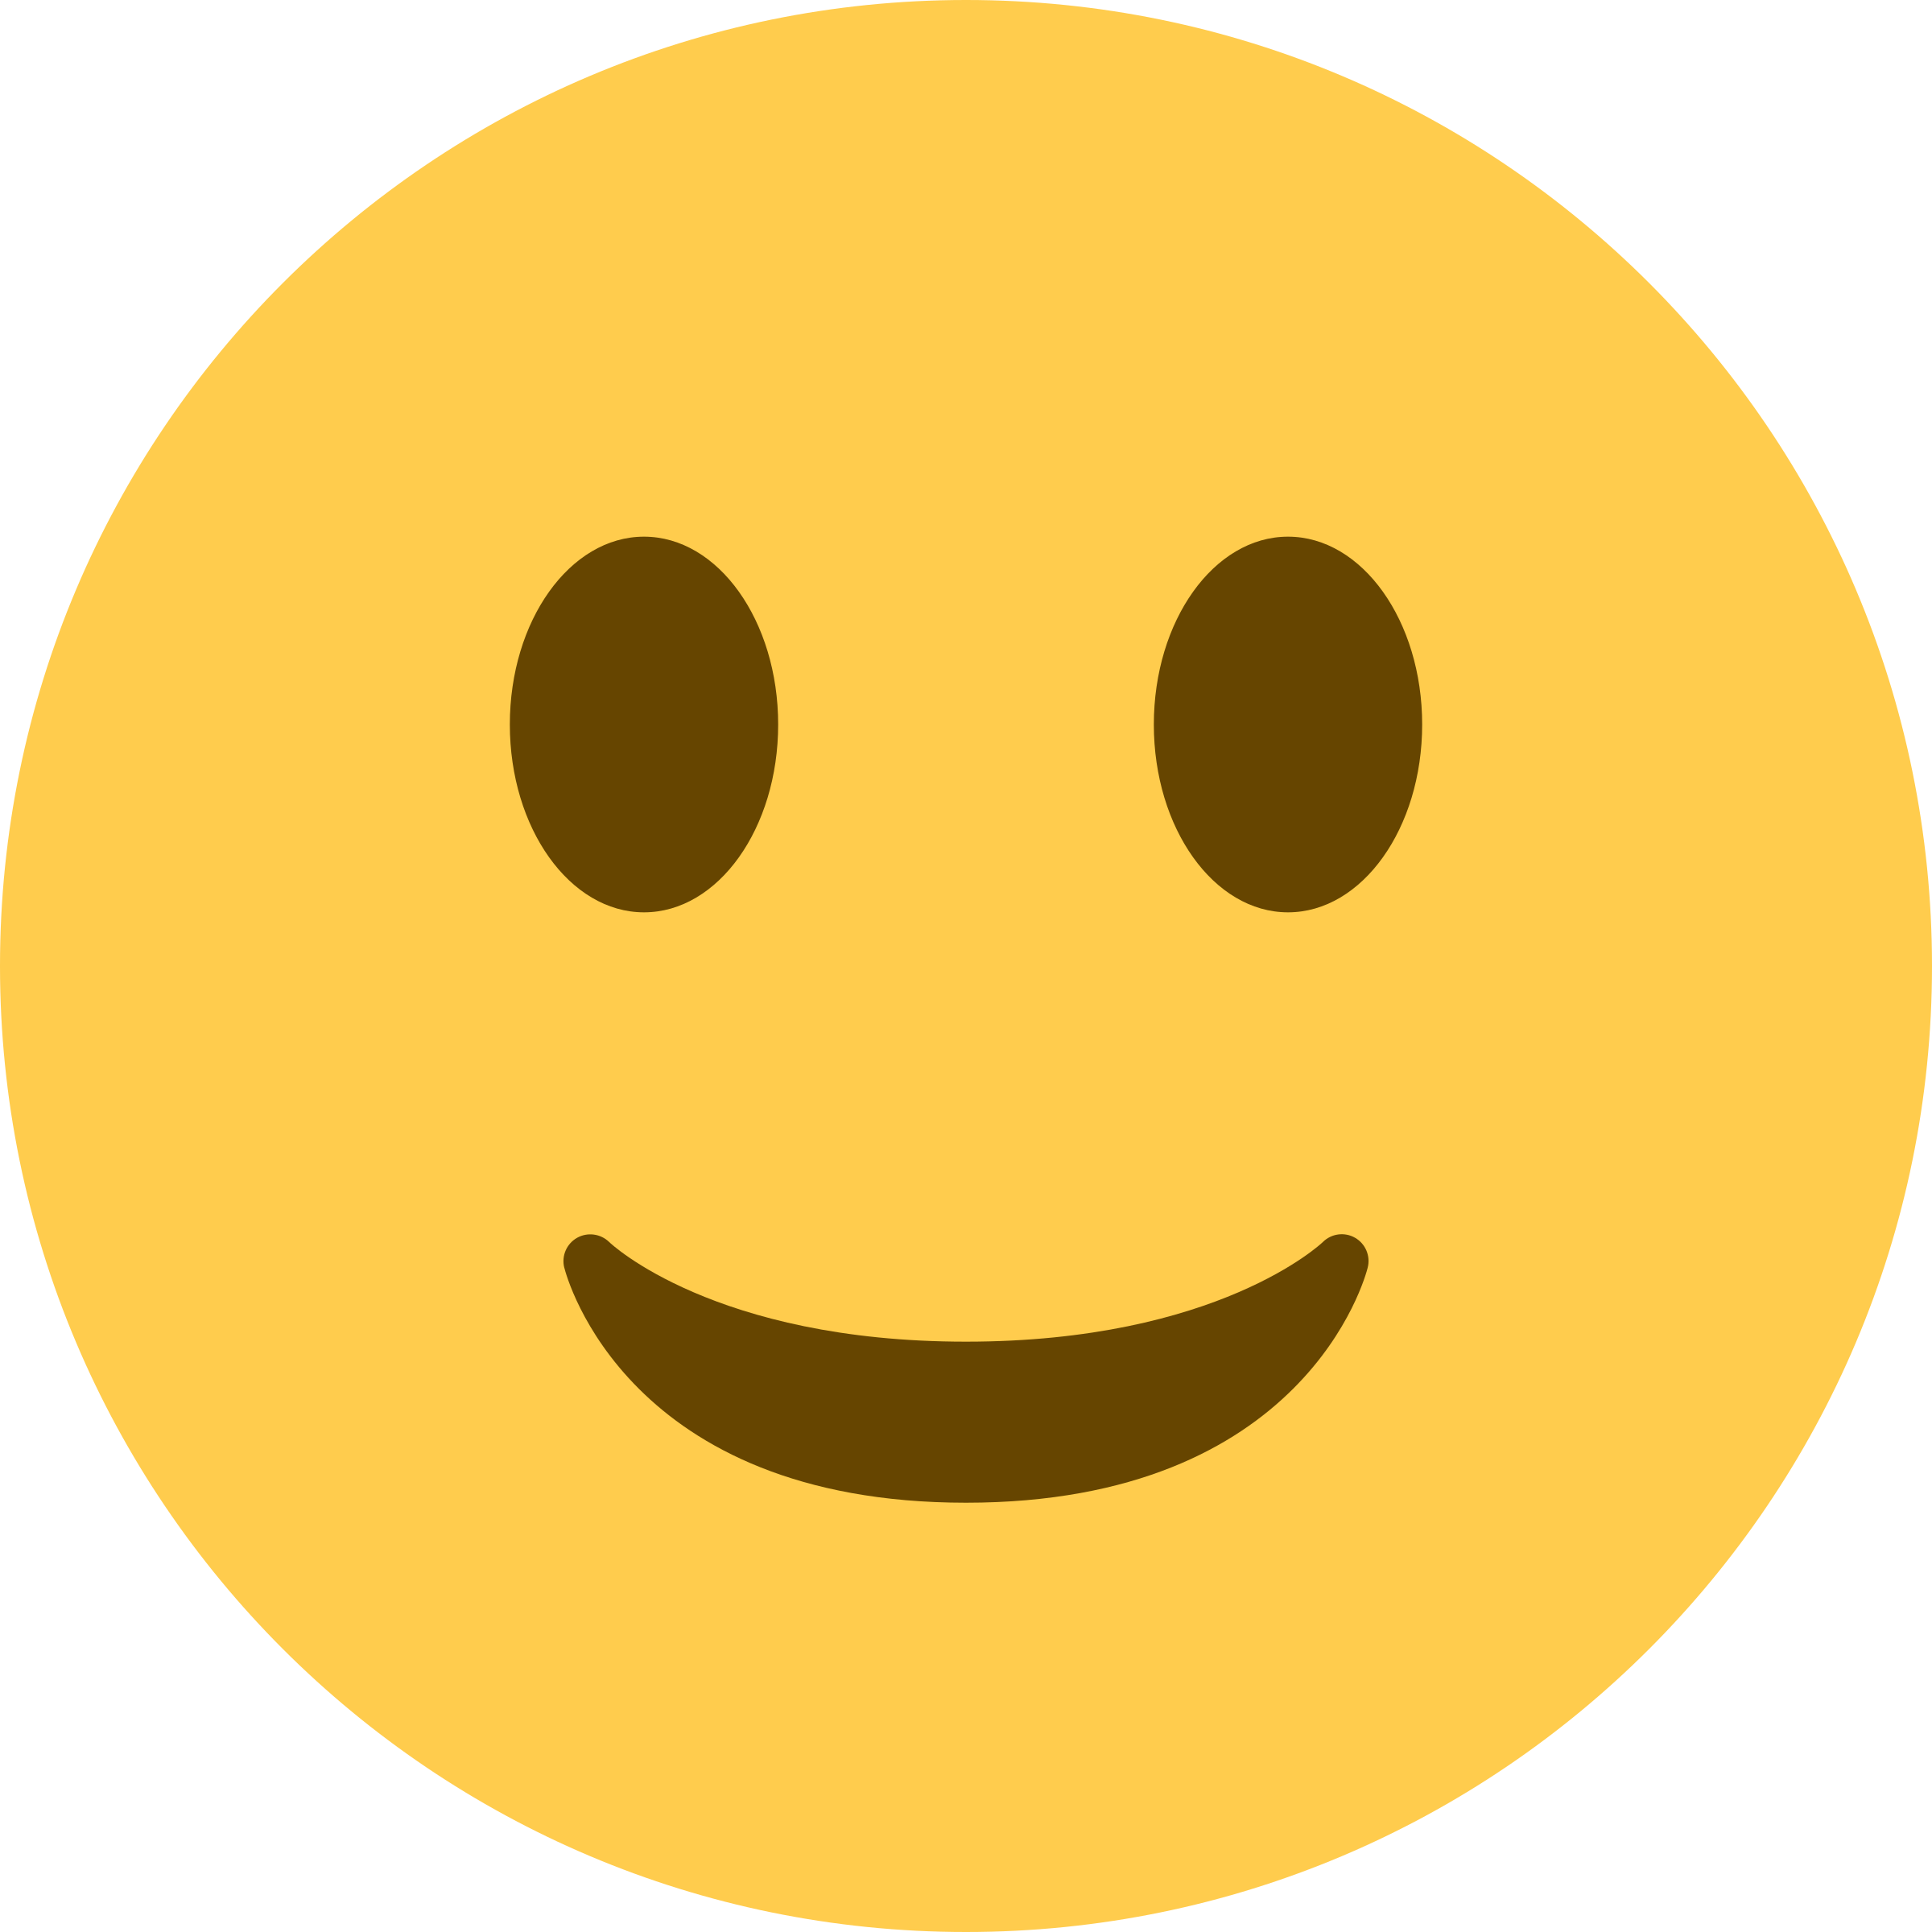 Laughter Emoji HQ Image Free PNG Image